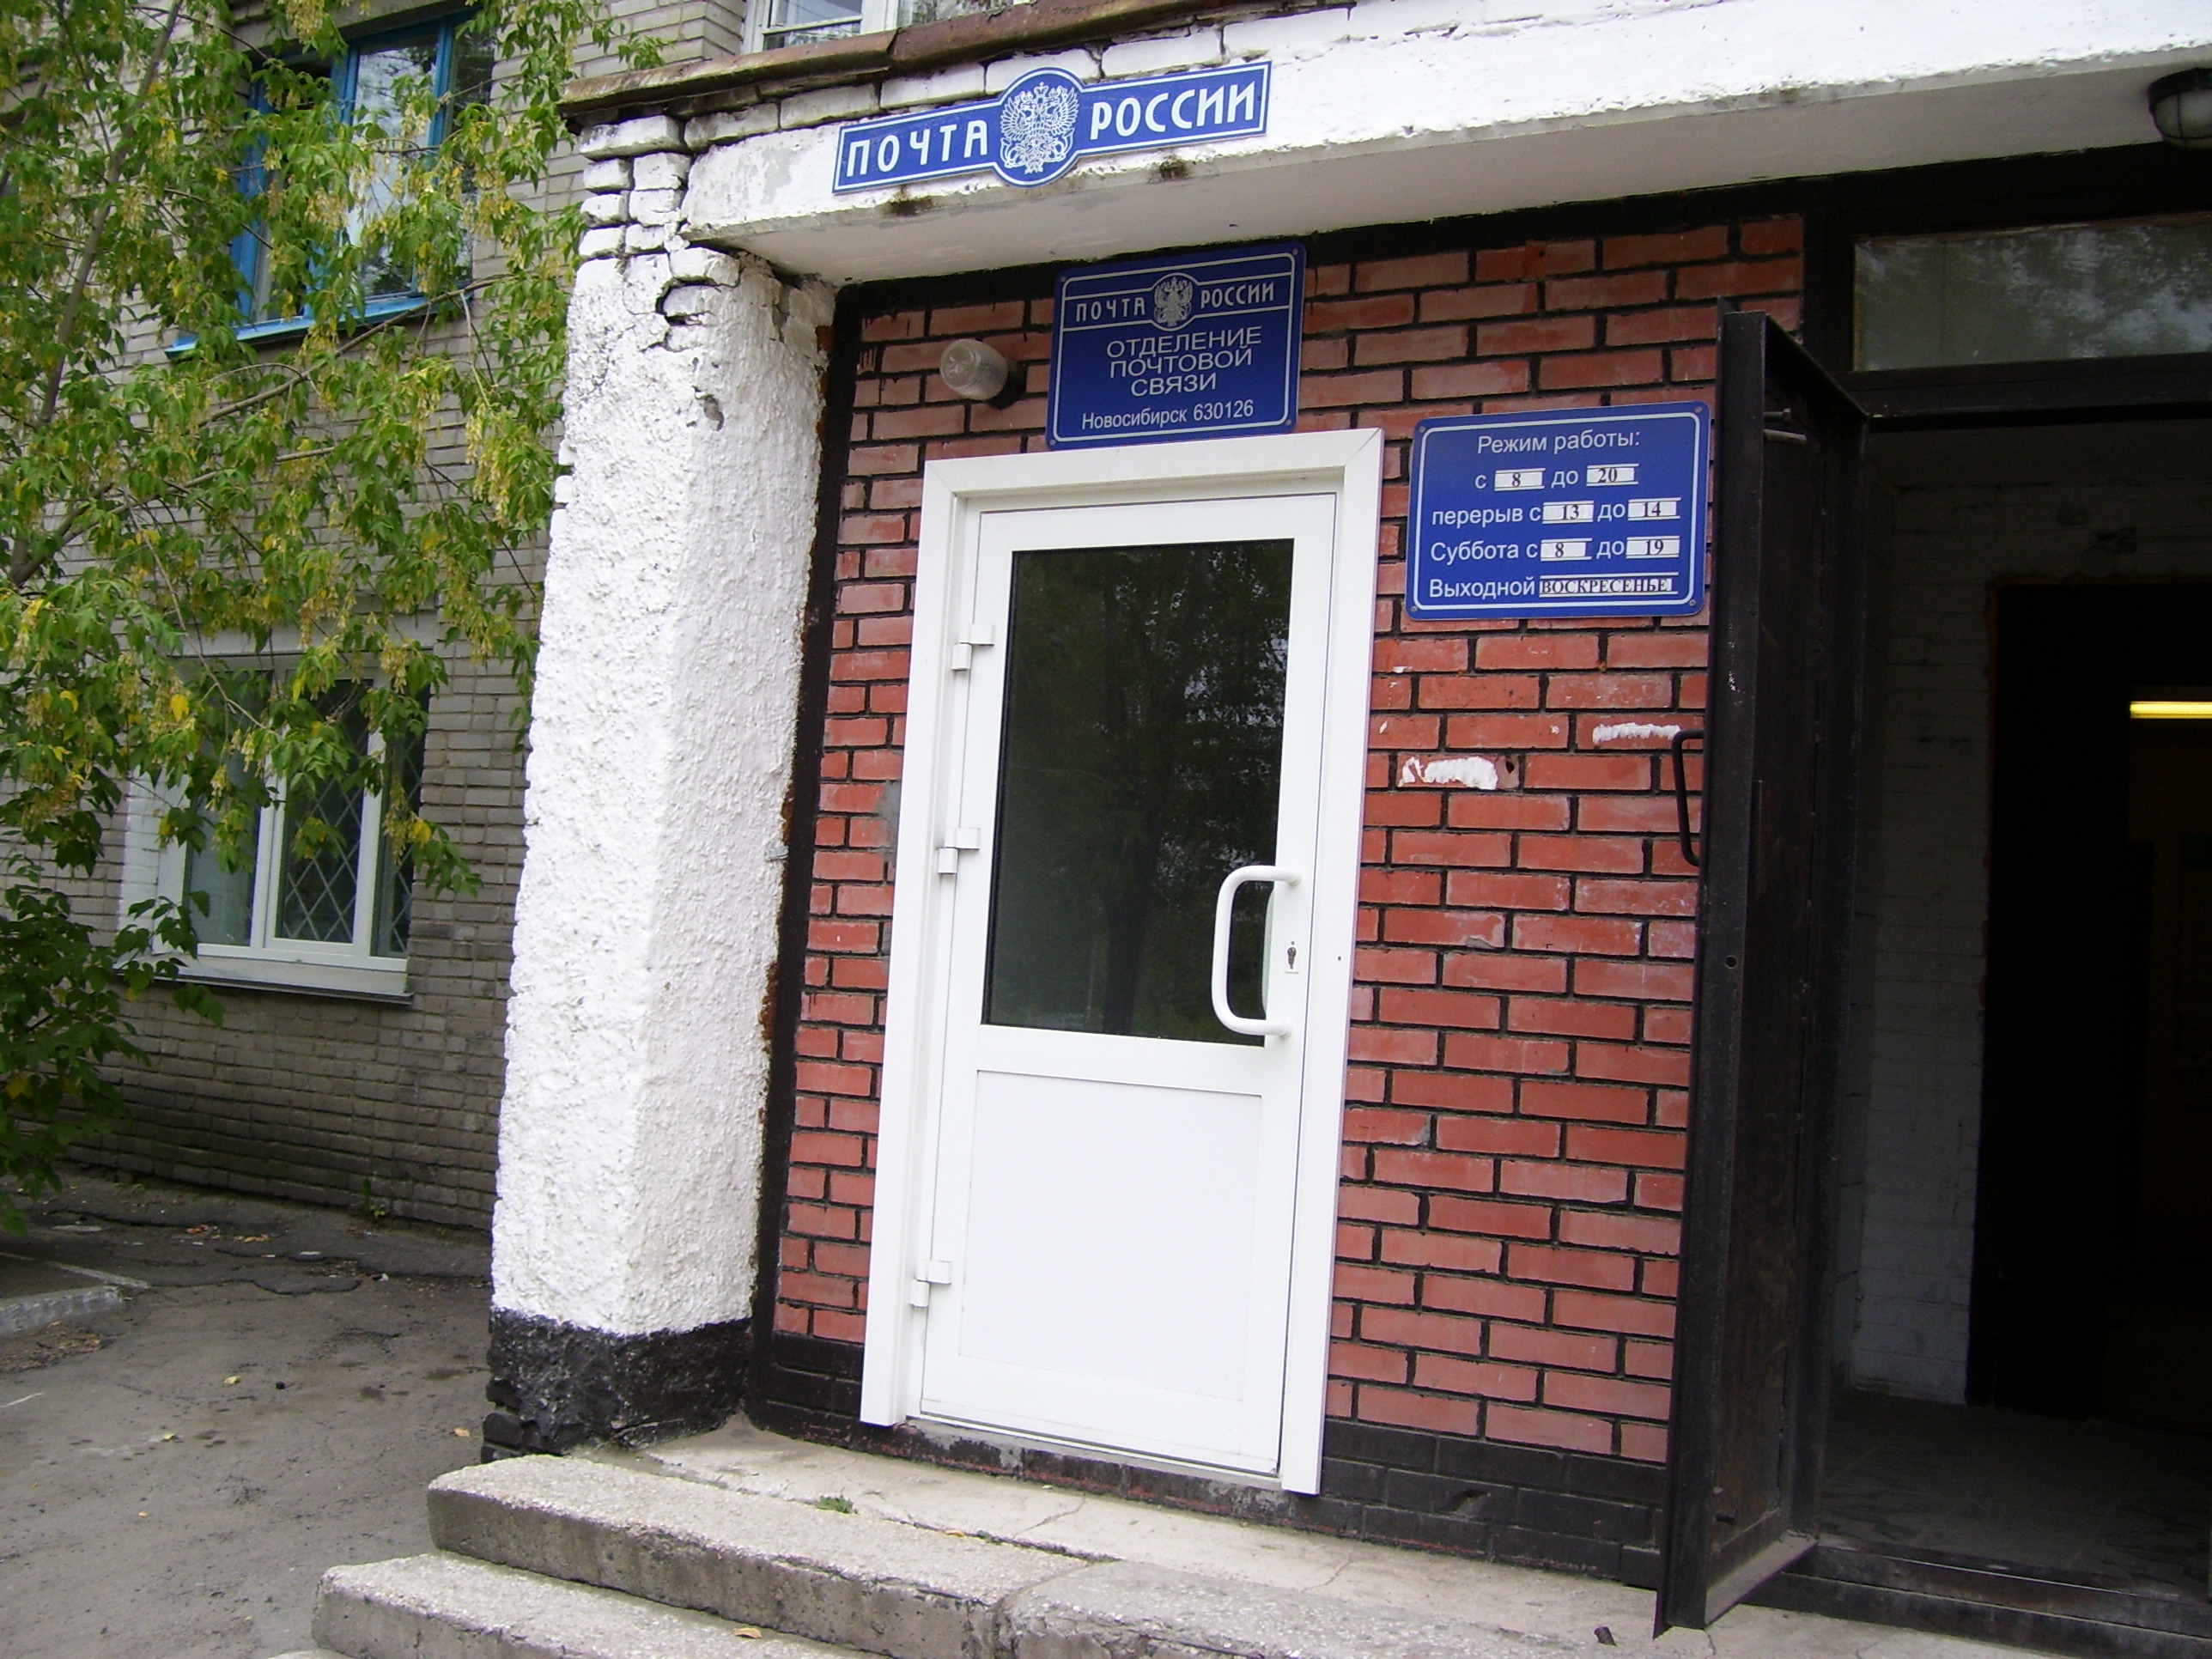 ФАСАД, отделение почтовой связи 630126, Новосибирская обл., Новосибирск